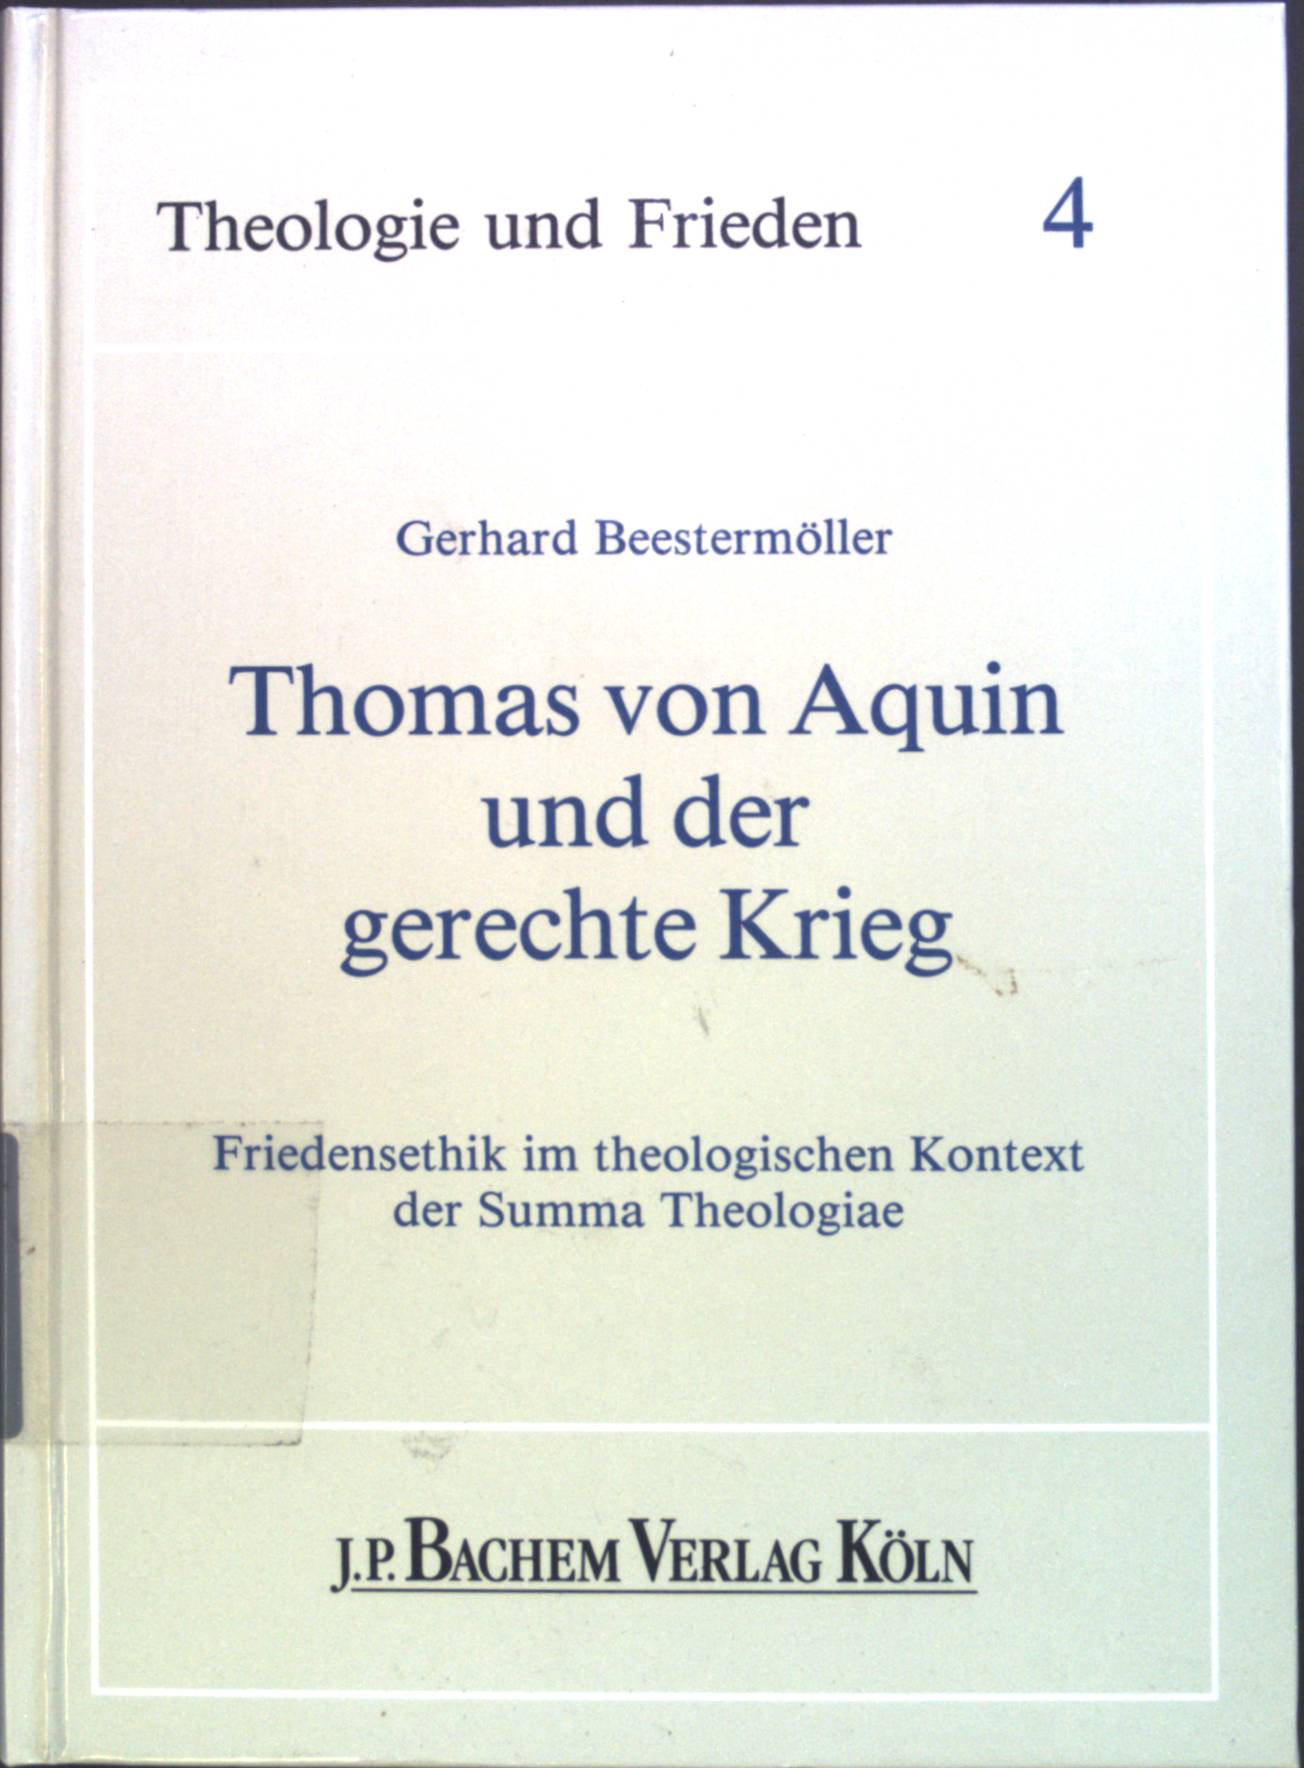 Thomas von Aquin und der gerechte Krieg : Friedensethik im theologischen Kontext der summa theologiae. Theologie und Frieden ; Bd. 4 - Beestermöller, Gerhard